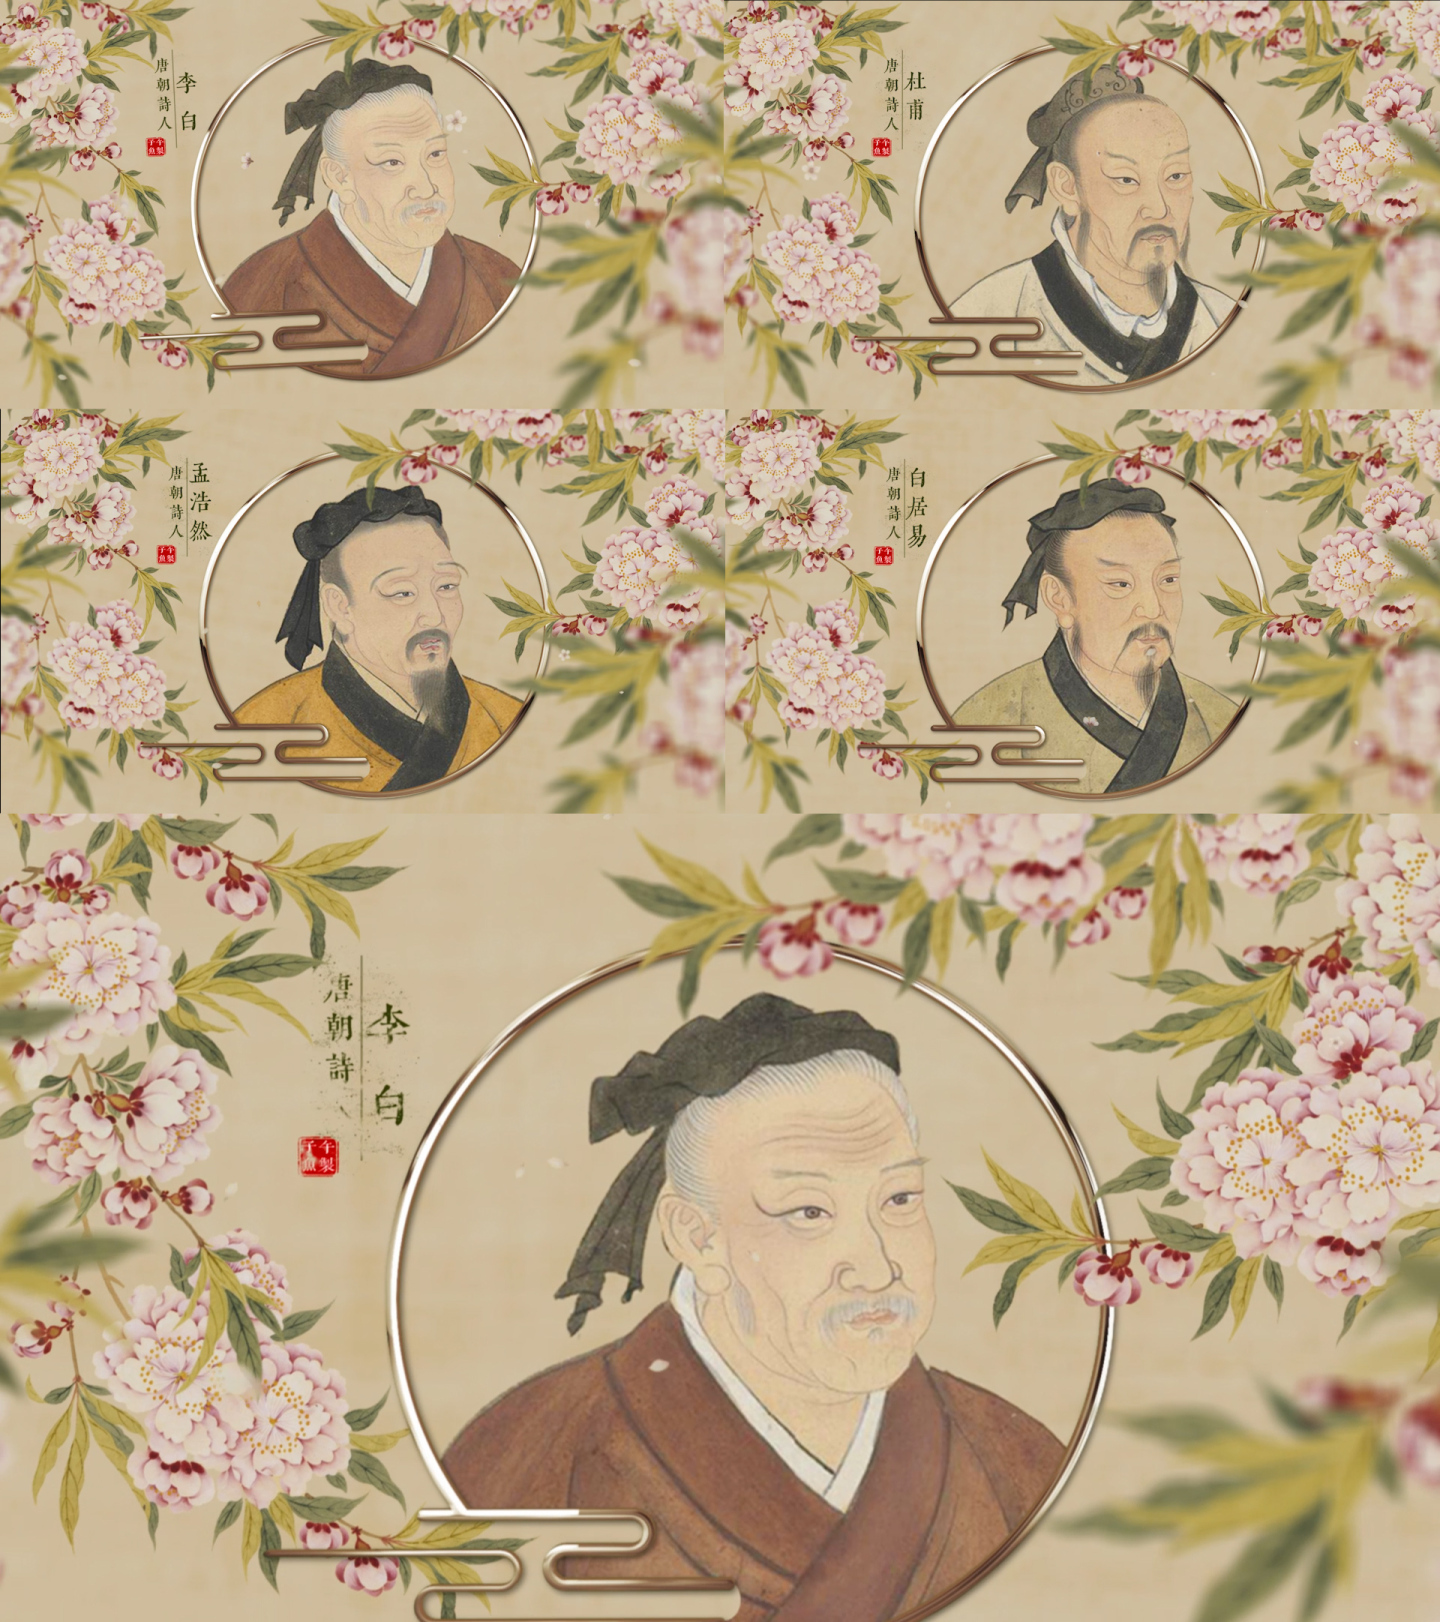 中国风历史人物照片名人图文介绍模板